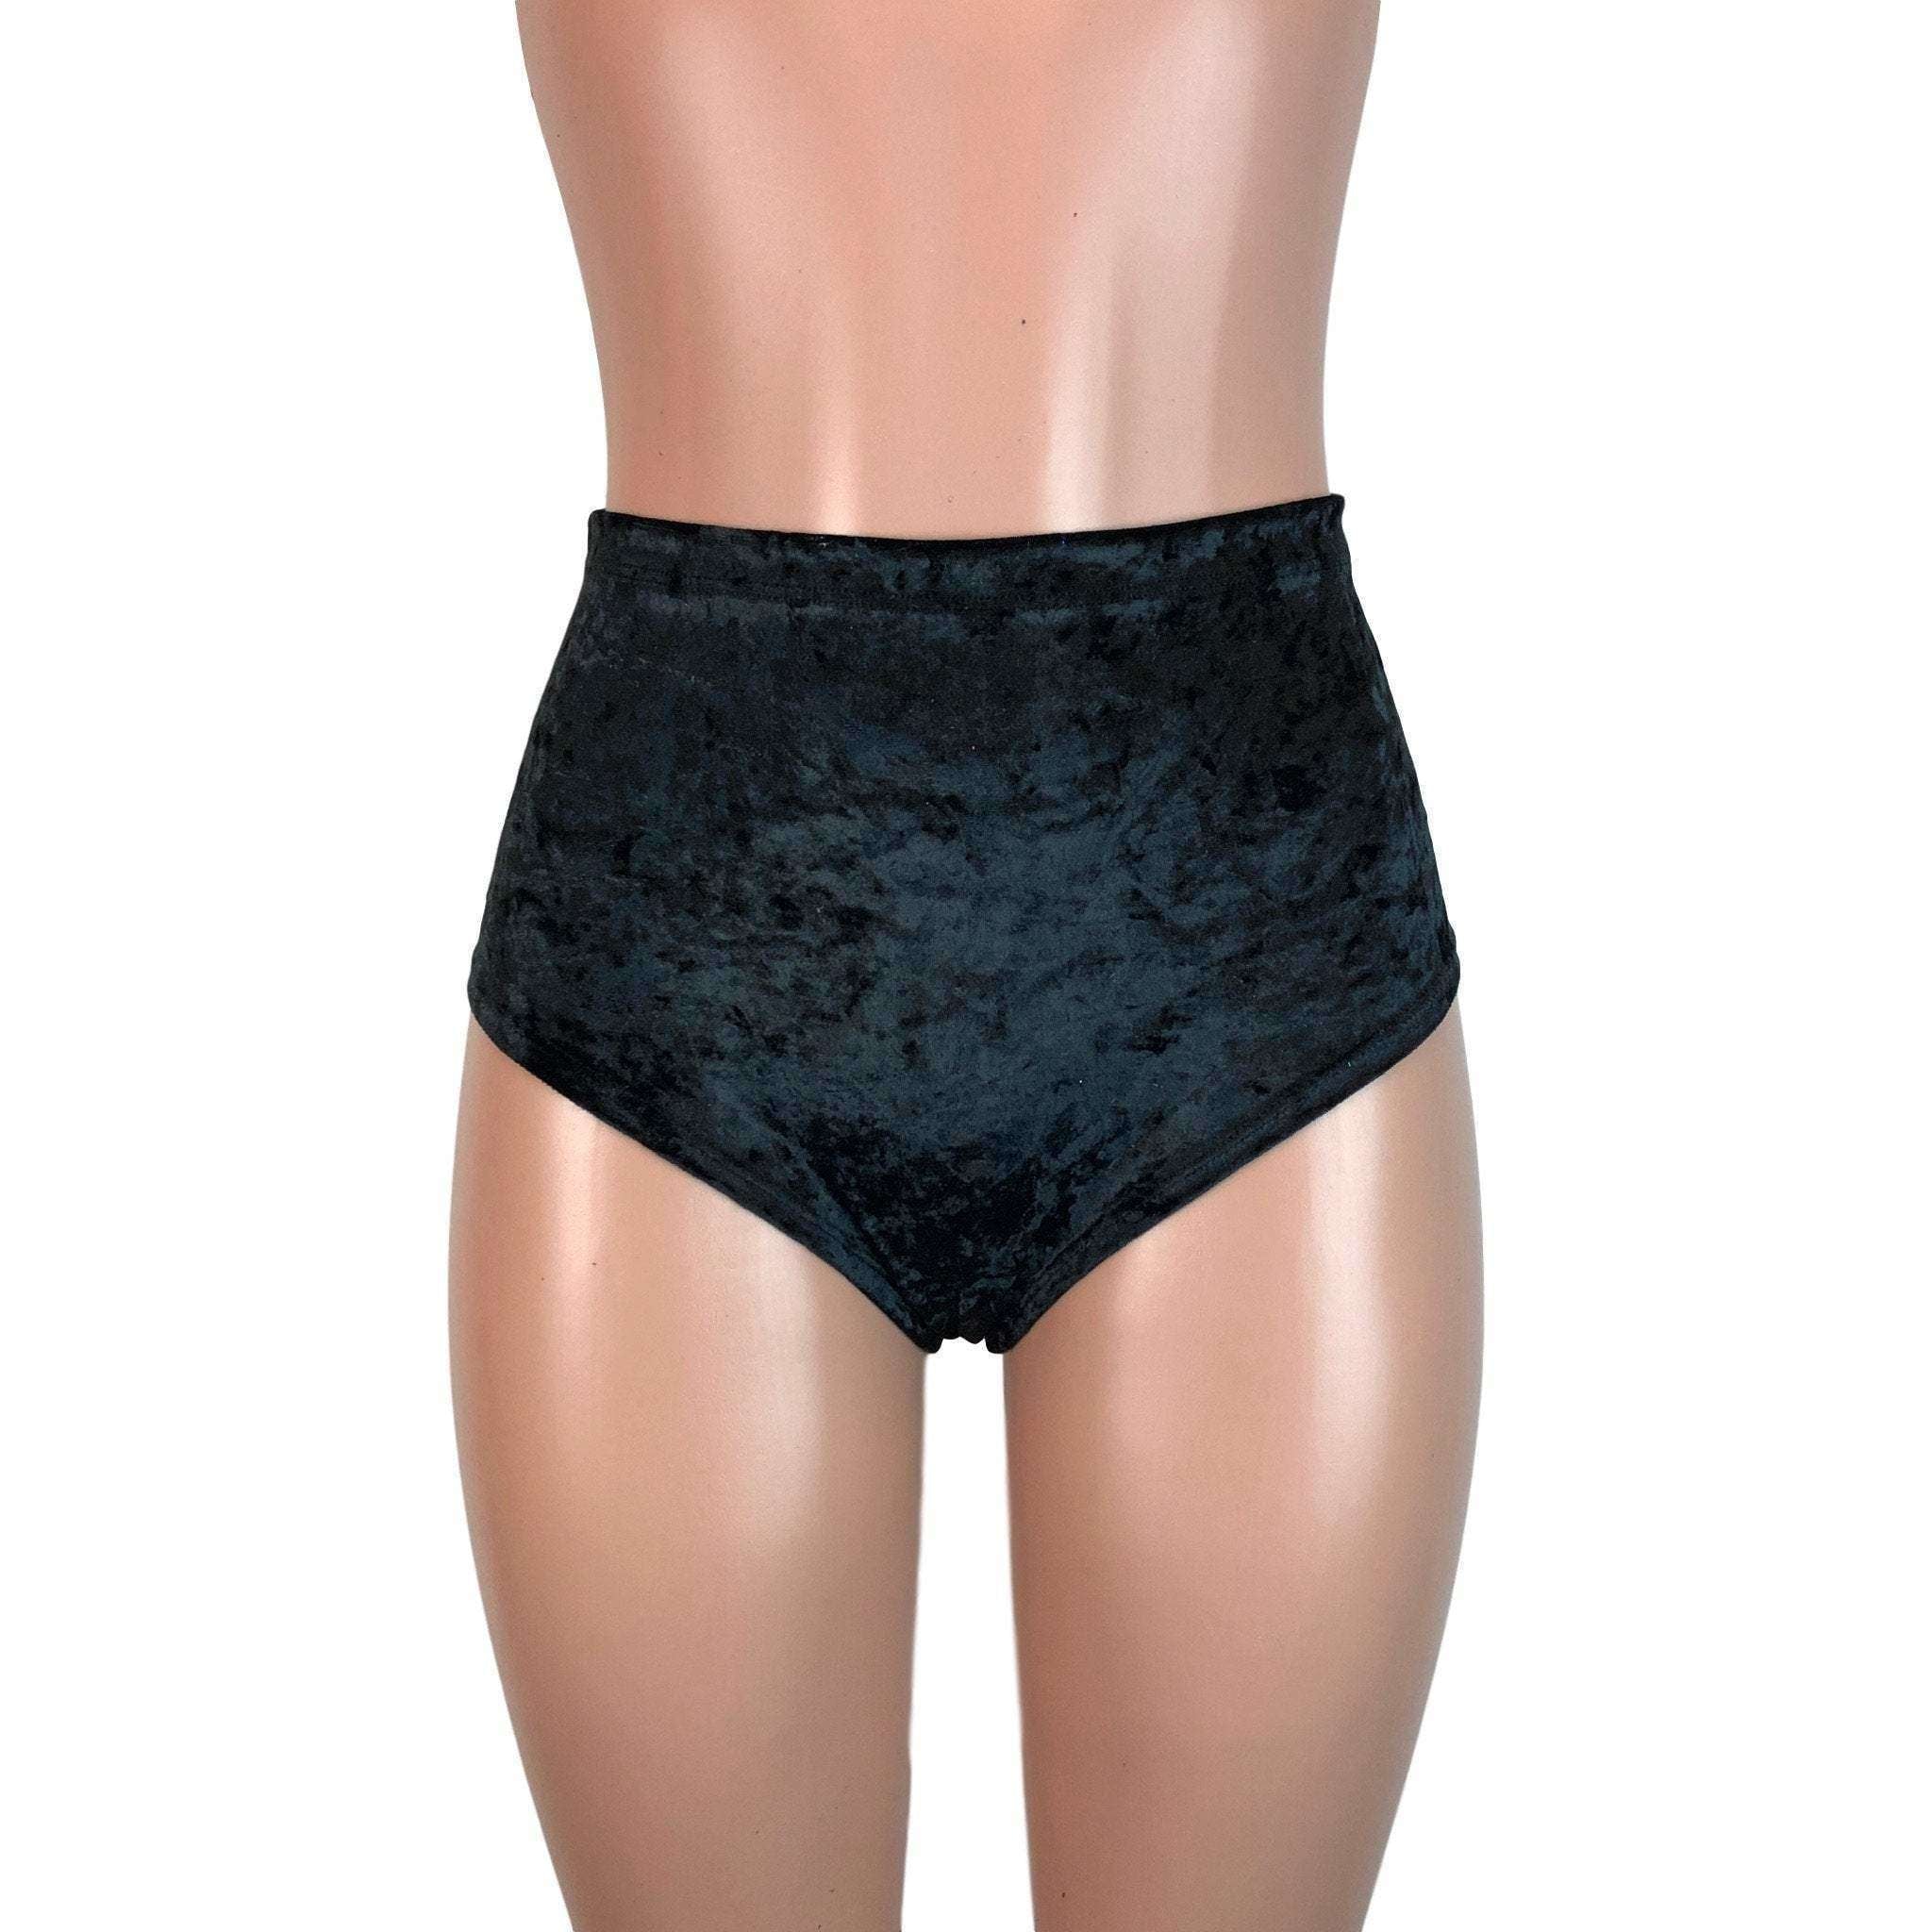 https://peridotclothing.com/cdn/shop/products/high-waist-scrunch-bikini-hot-pants---black-crushed-velvetbikinis-22306424_2400x.jpg?v=1576461168